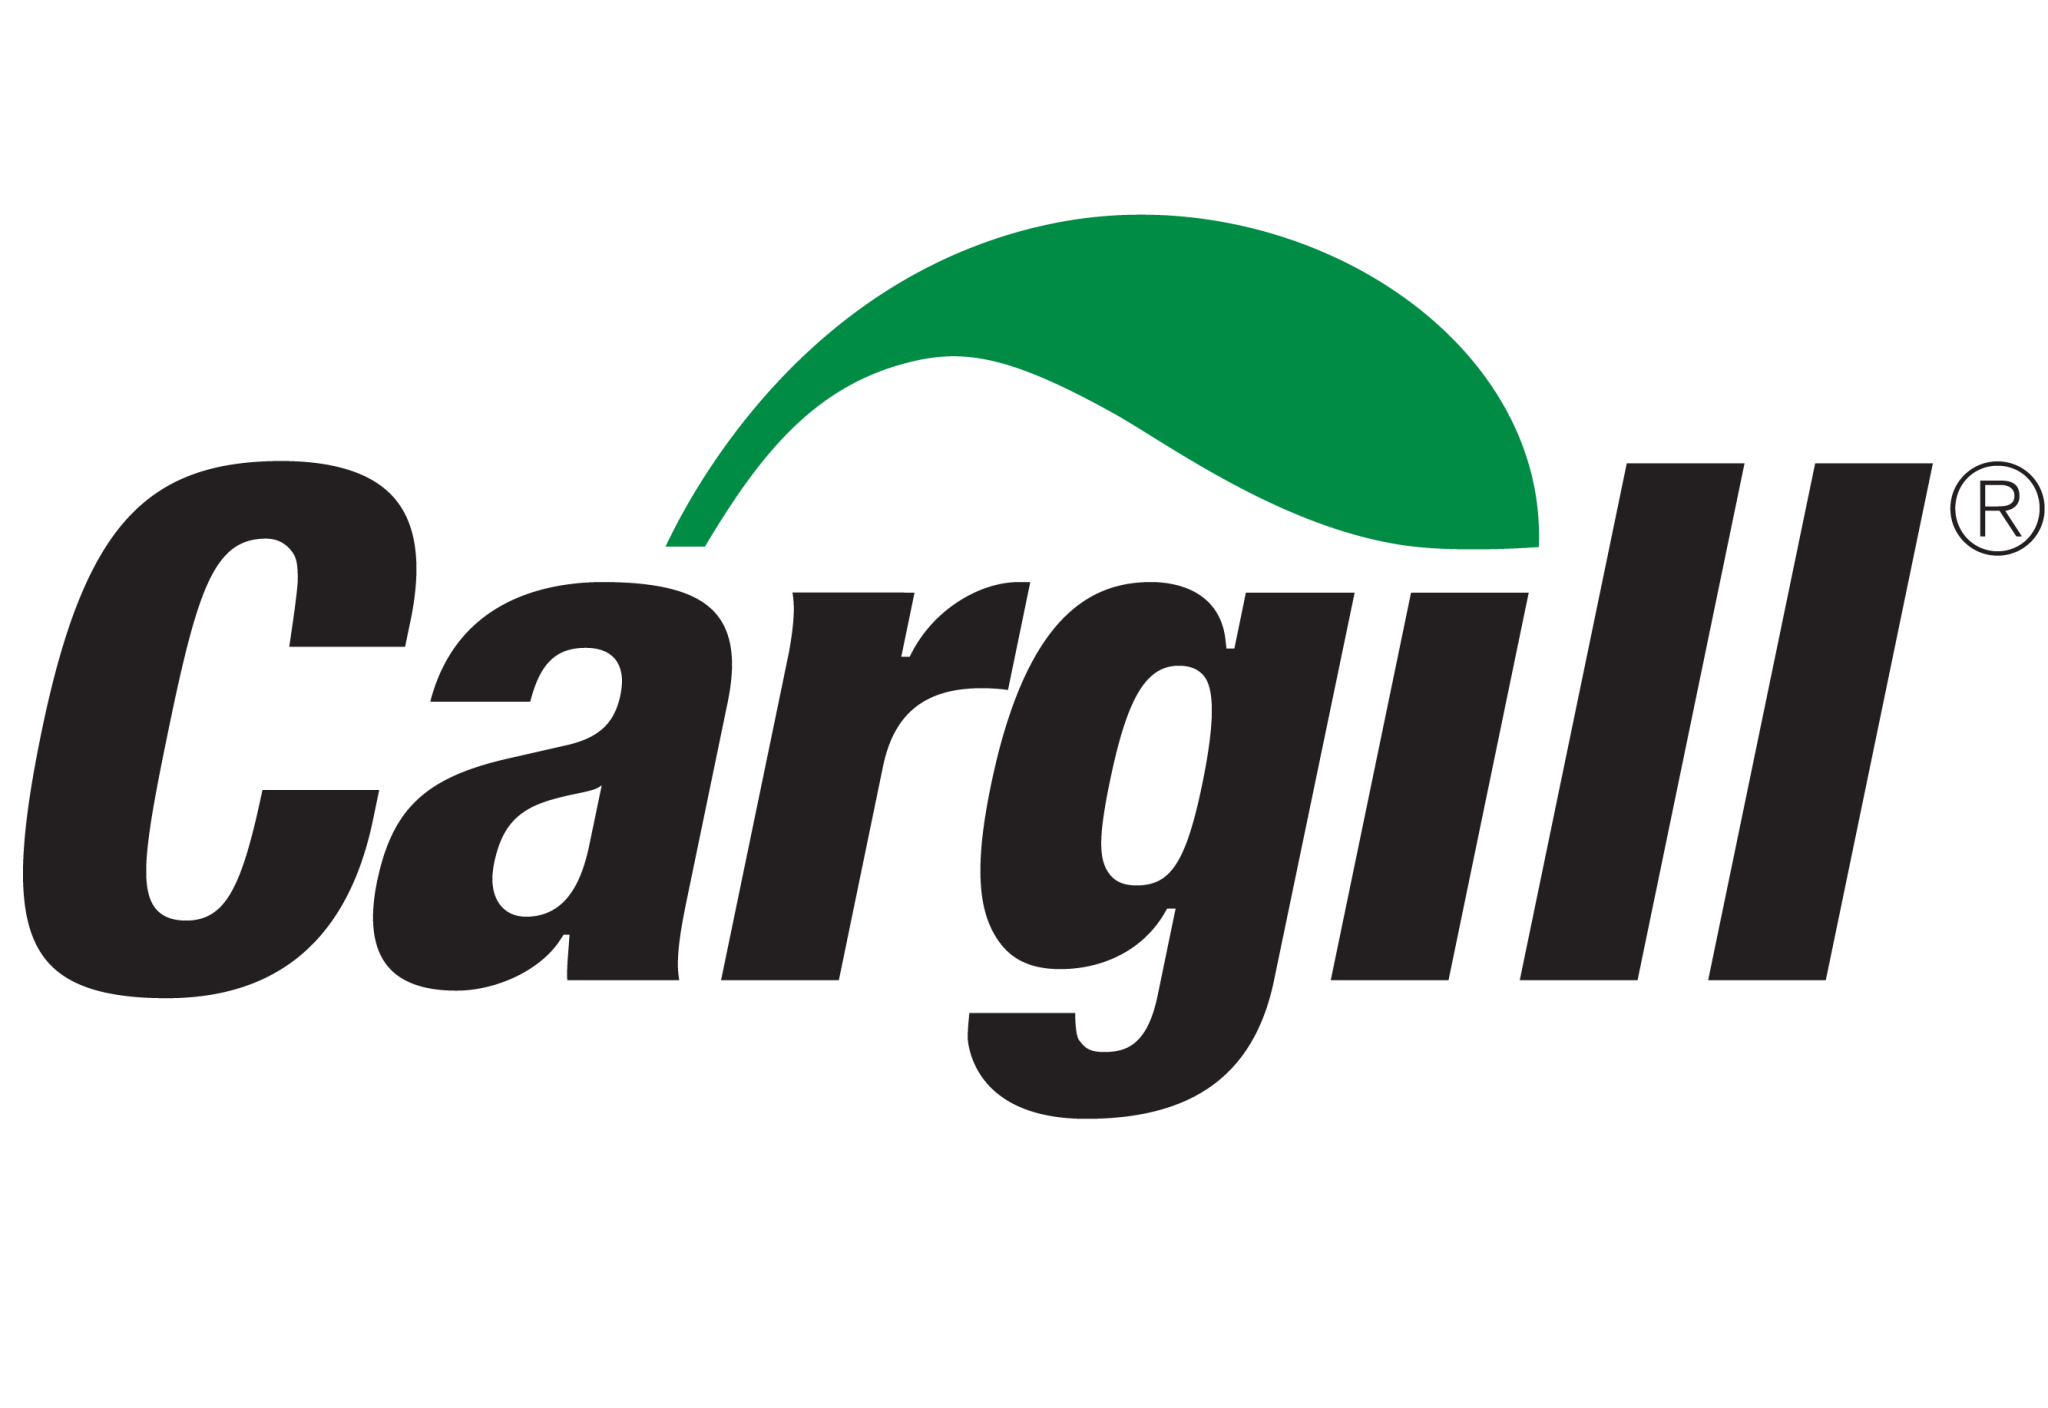 Cargill-Logo